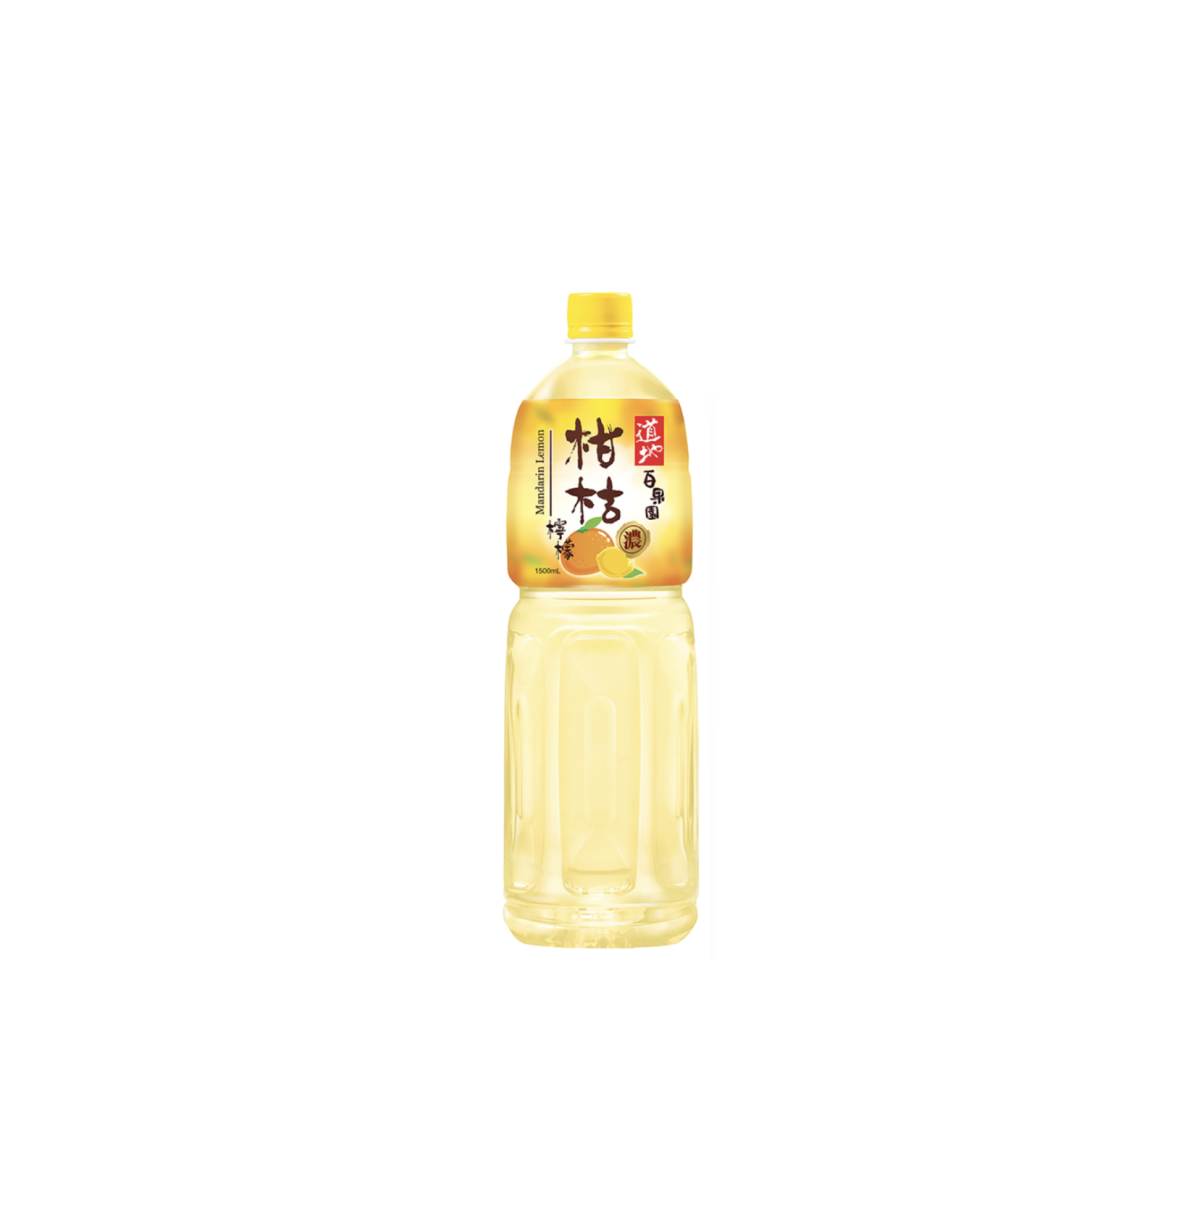 【$10/2件】道地 柑桔檸檬 1.5 L